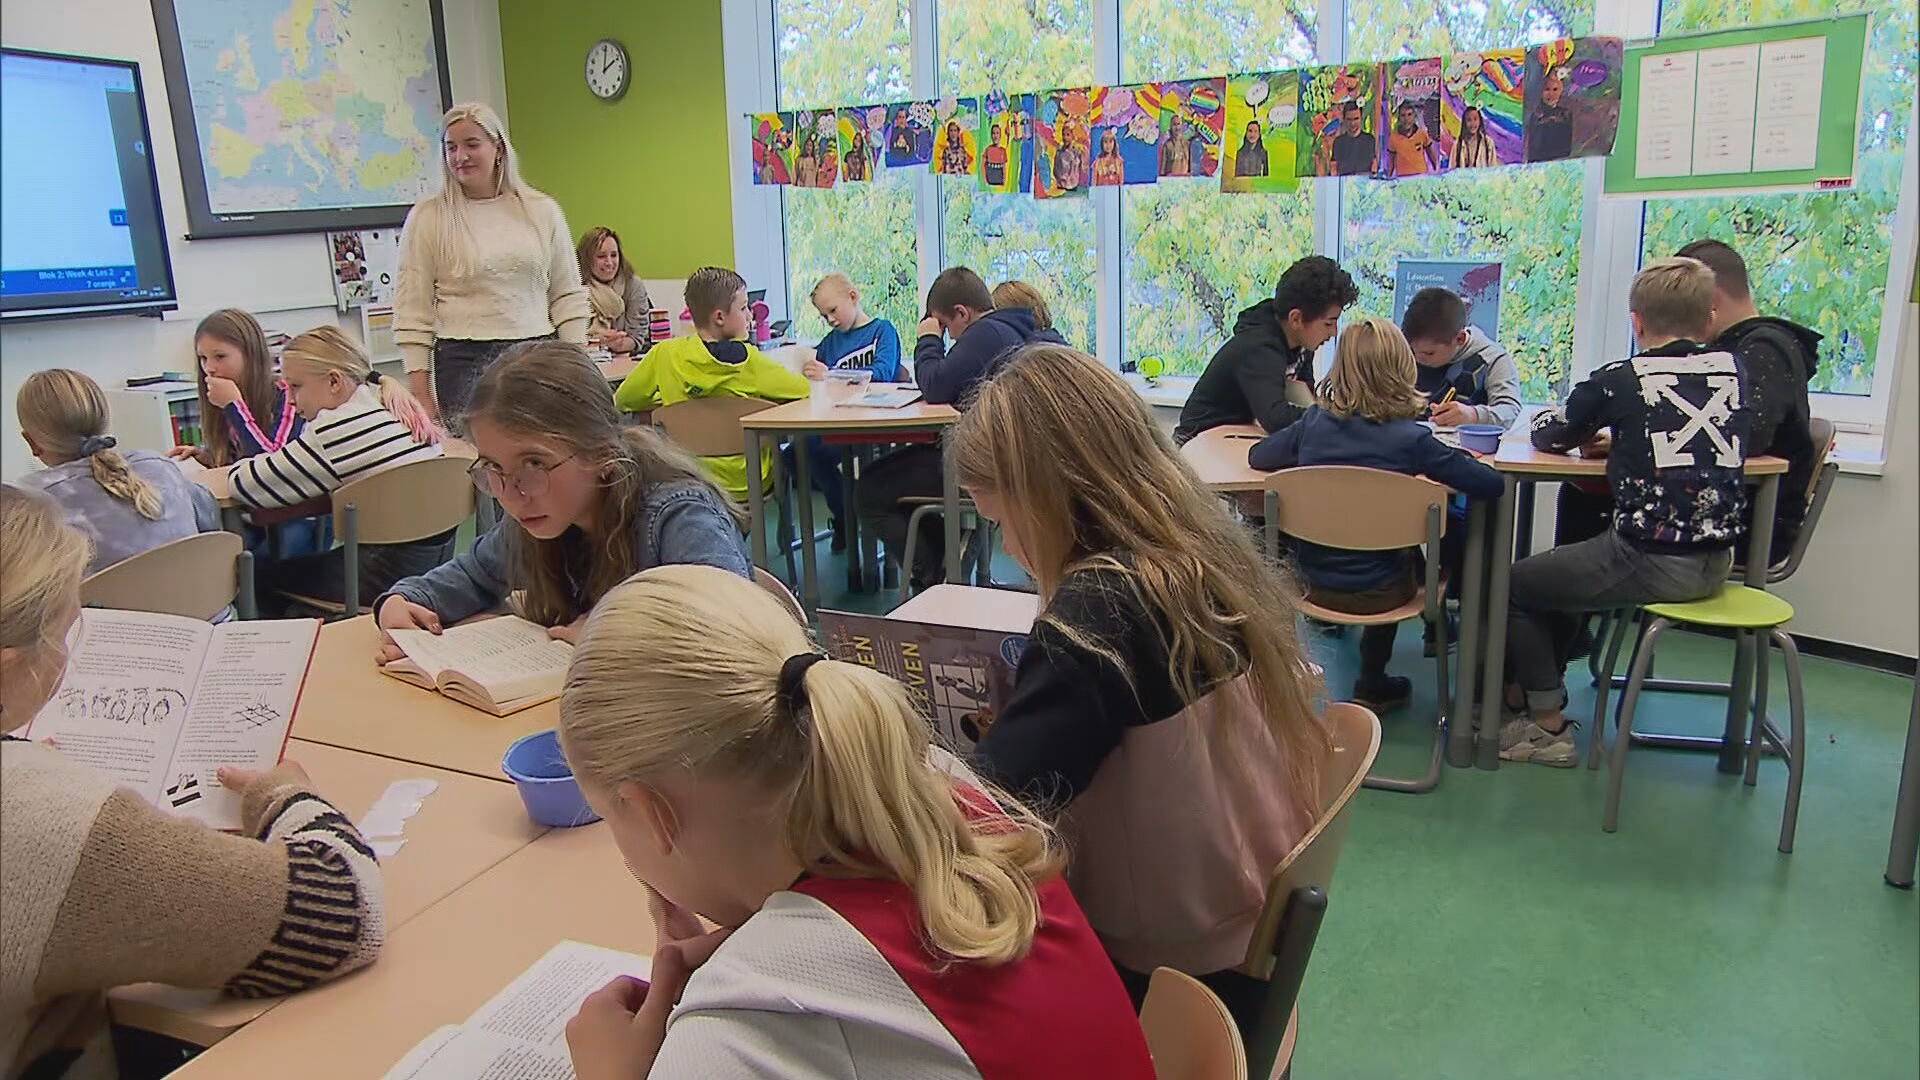 نصائح جديدة إلى مجلس الوزراء الهولندي بتخفيف قواعد الحجر الصحي في التعليم 